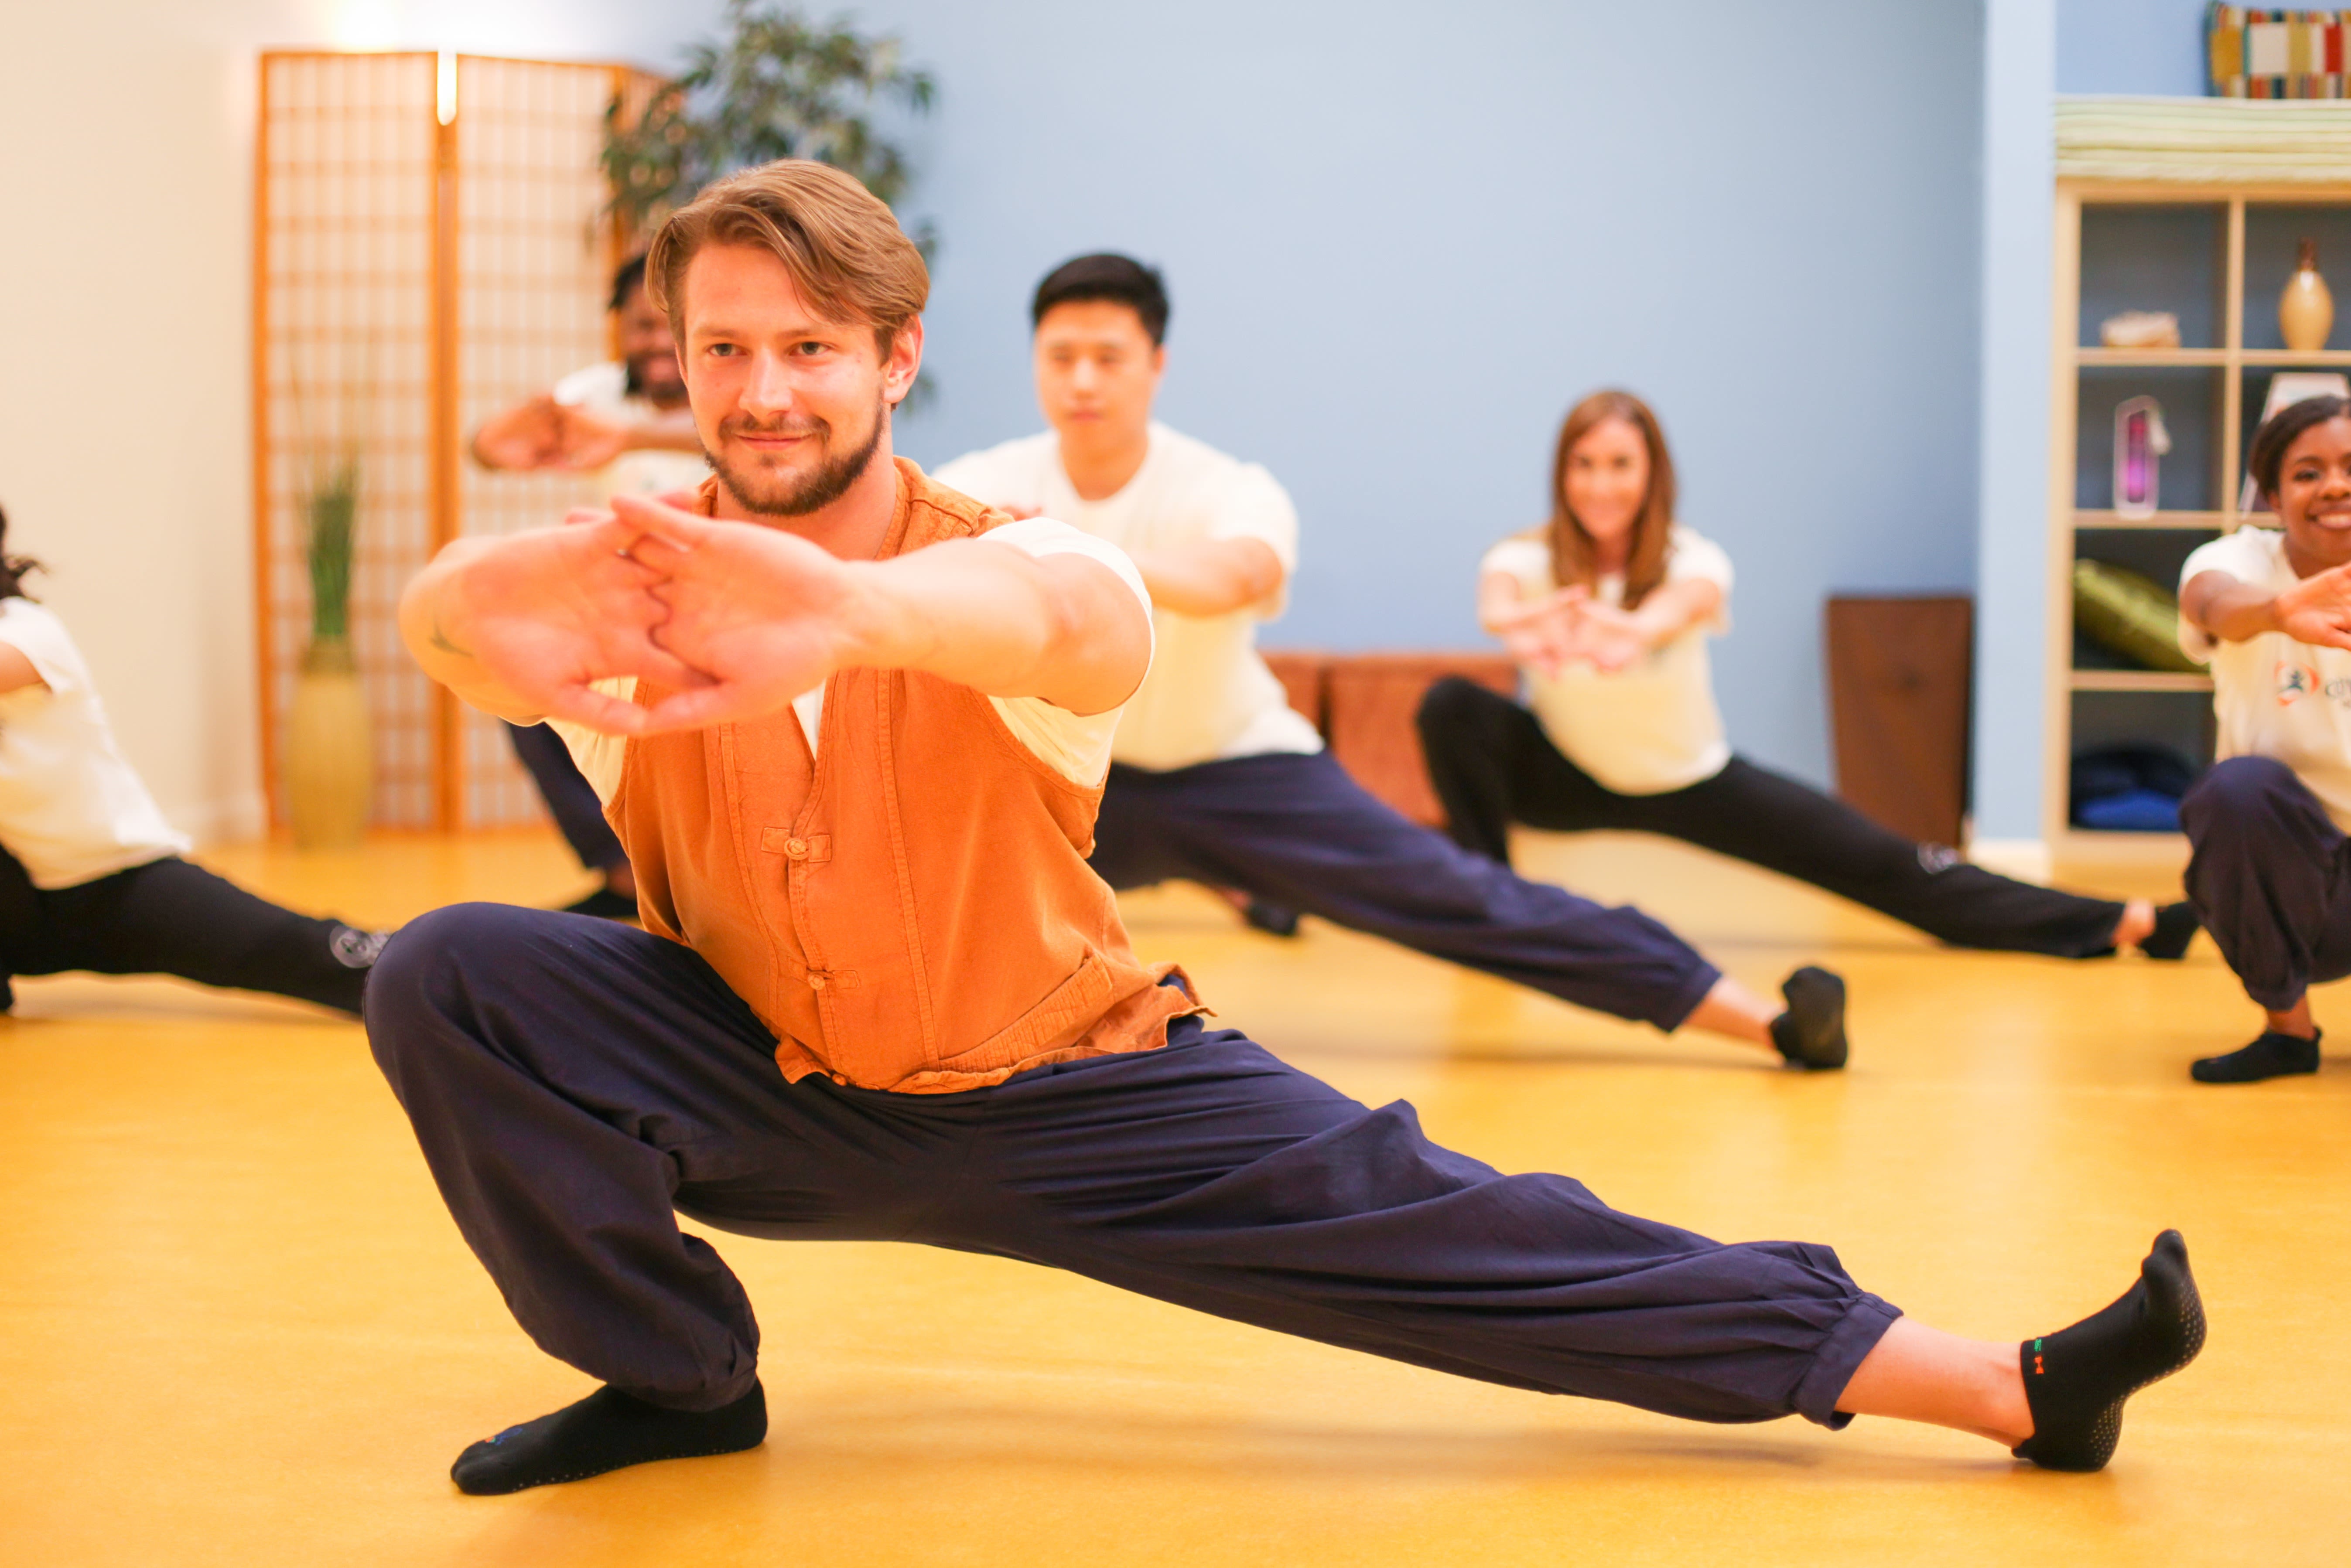 Body & Brain Yoga·Tai Chi - Brea: Read Reviews and Book Classes on ClassPass